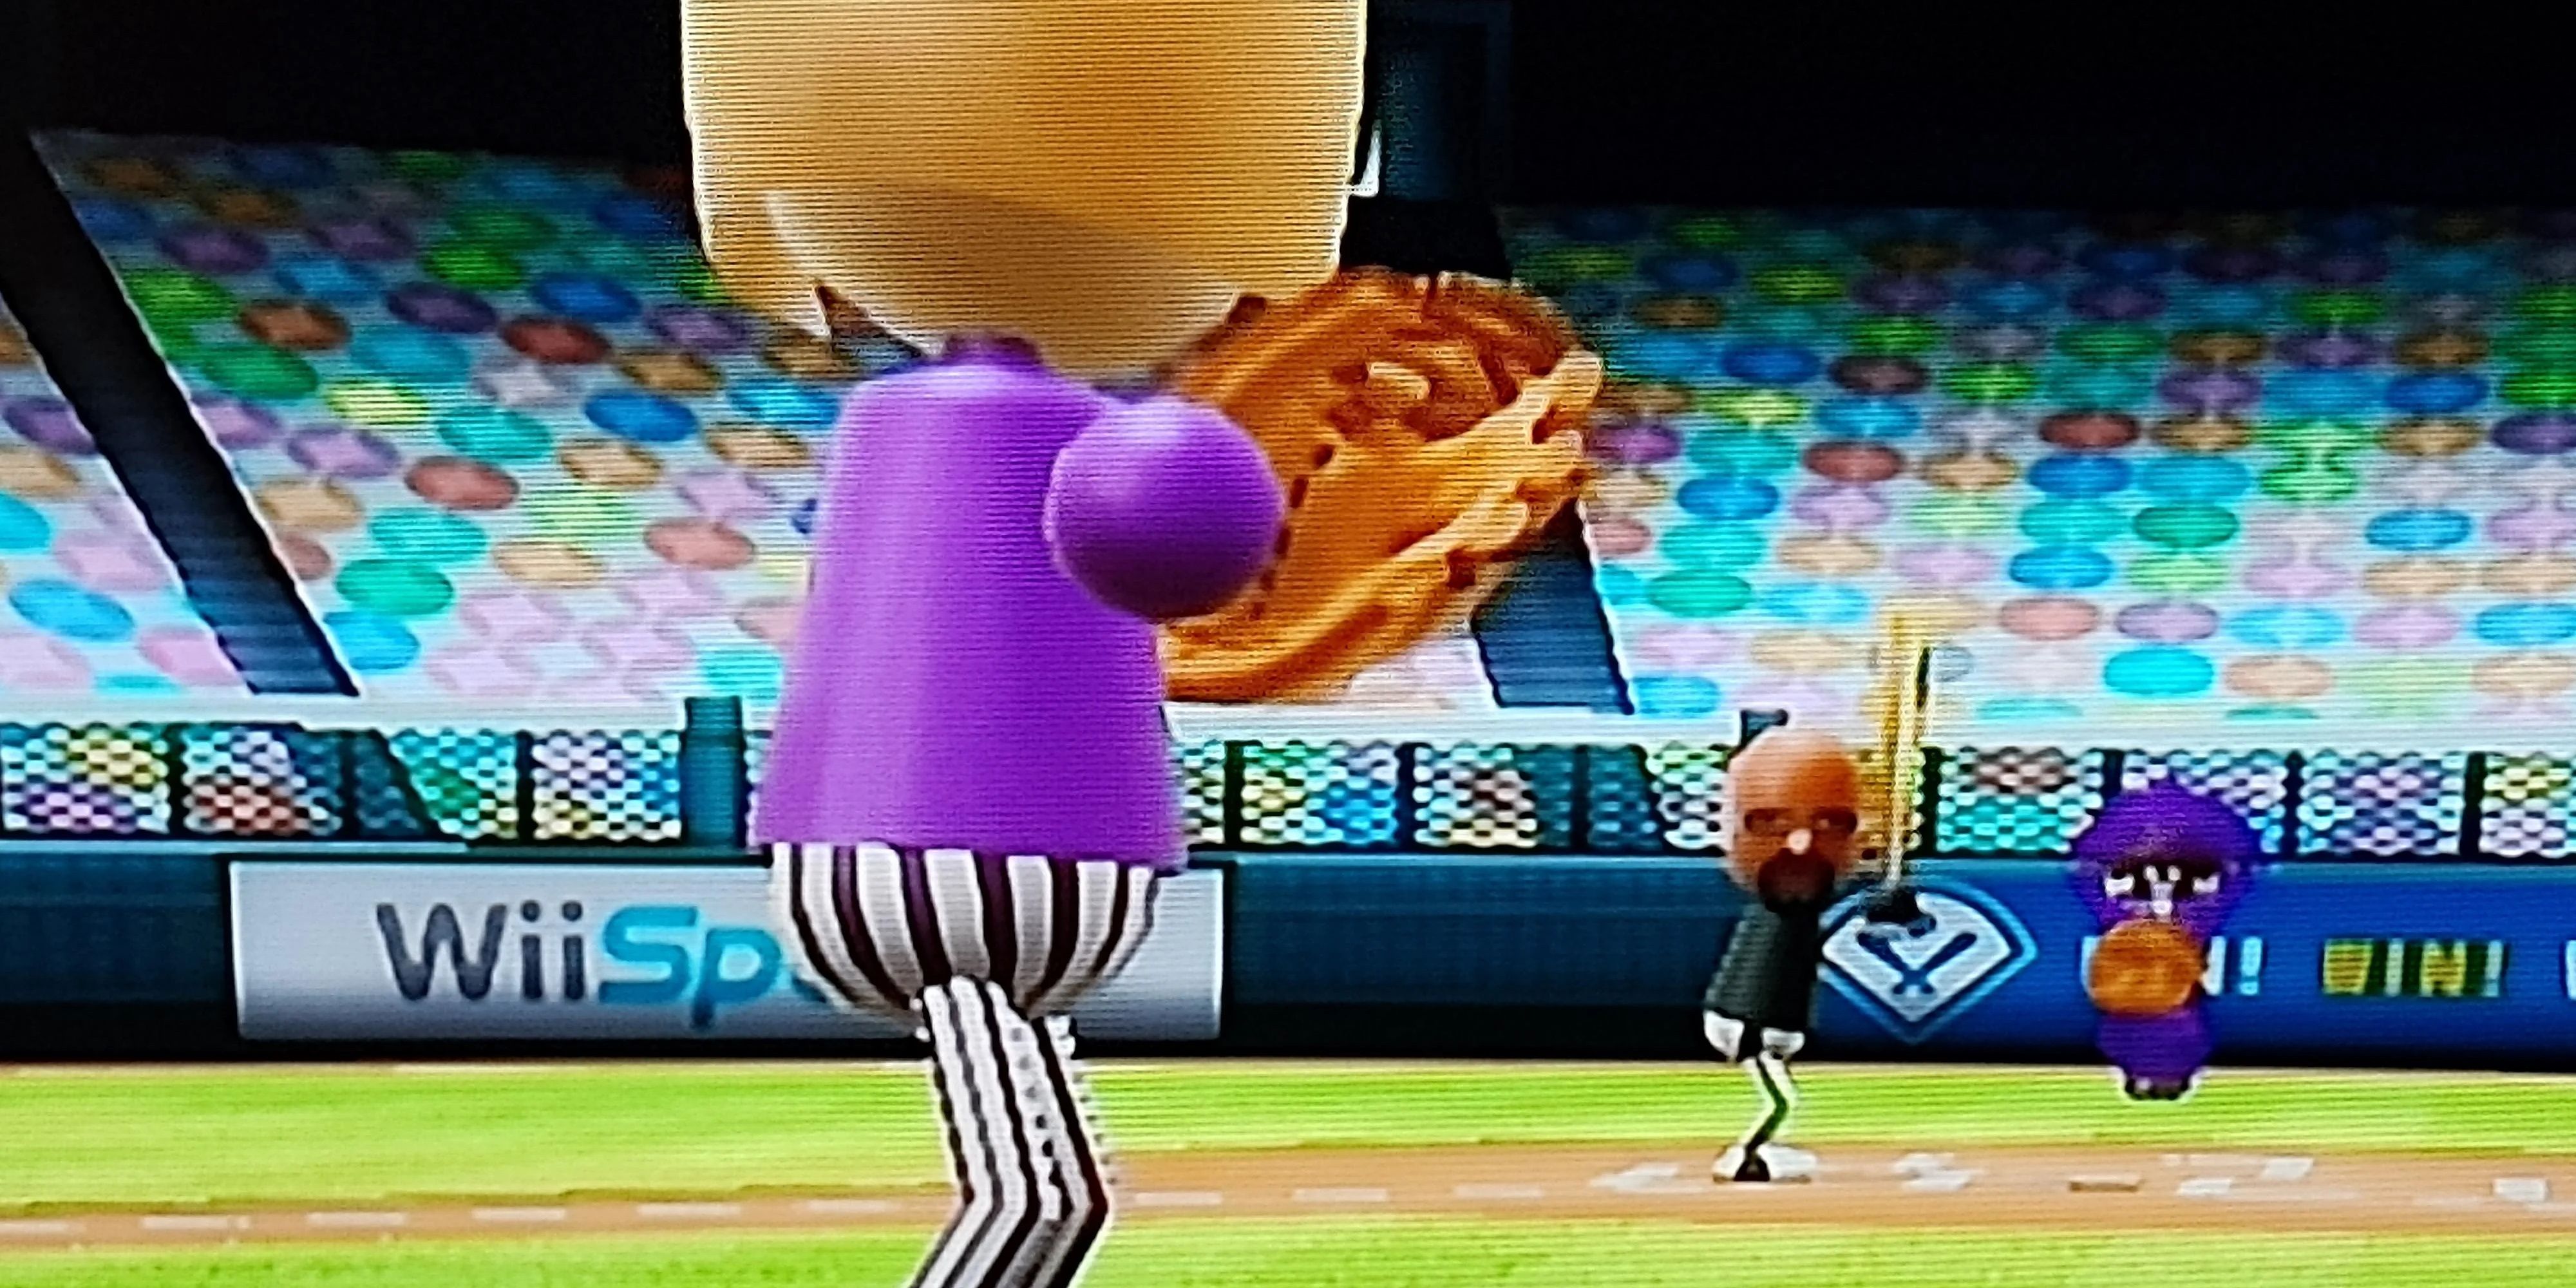 Wii Sports baseball game